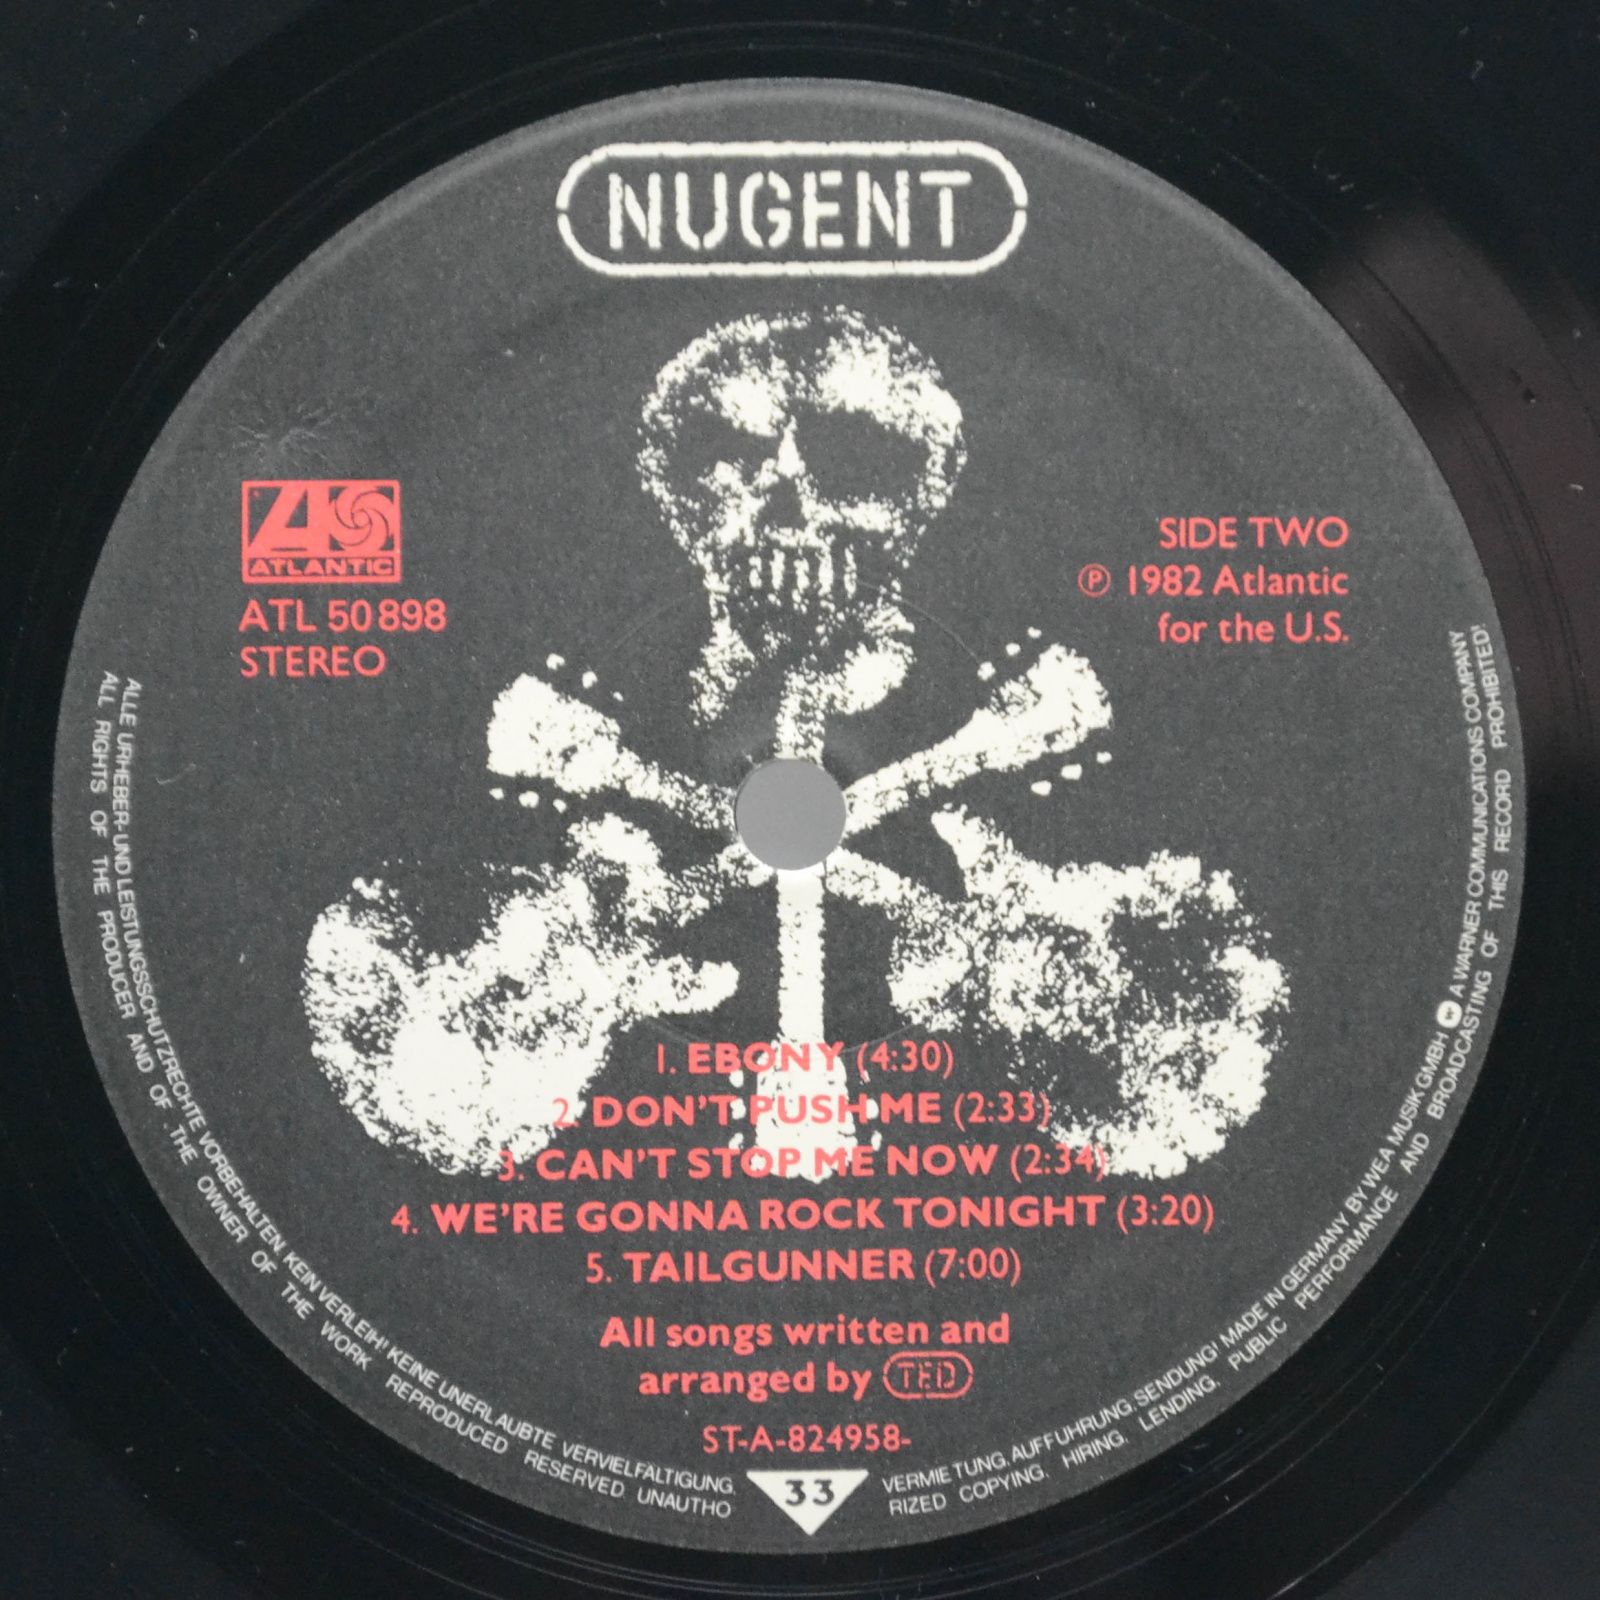 Ted Nugent — Nugent, 1982